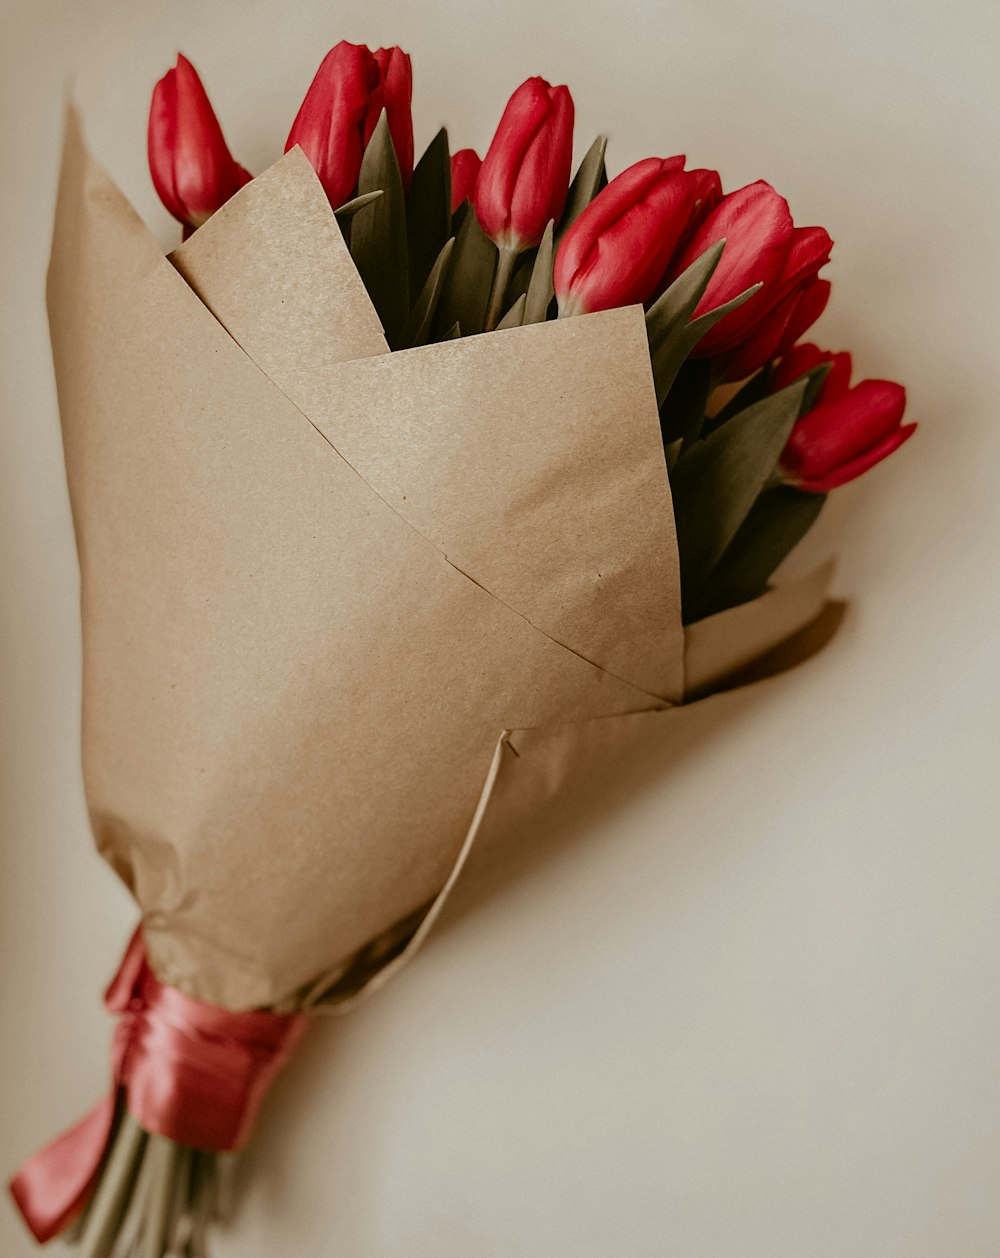 pétalos de flores rojas y verdes en una bolsa de papel marrón